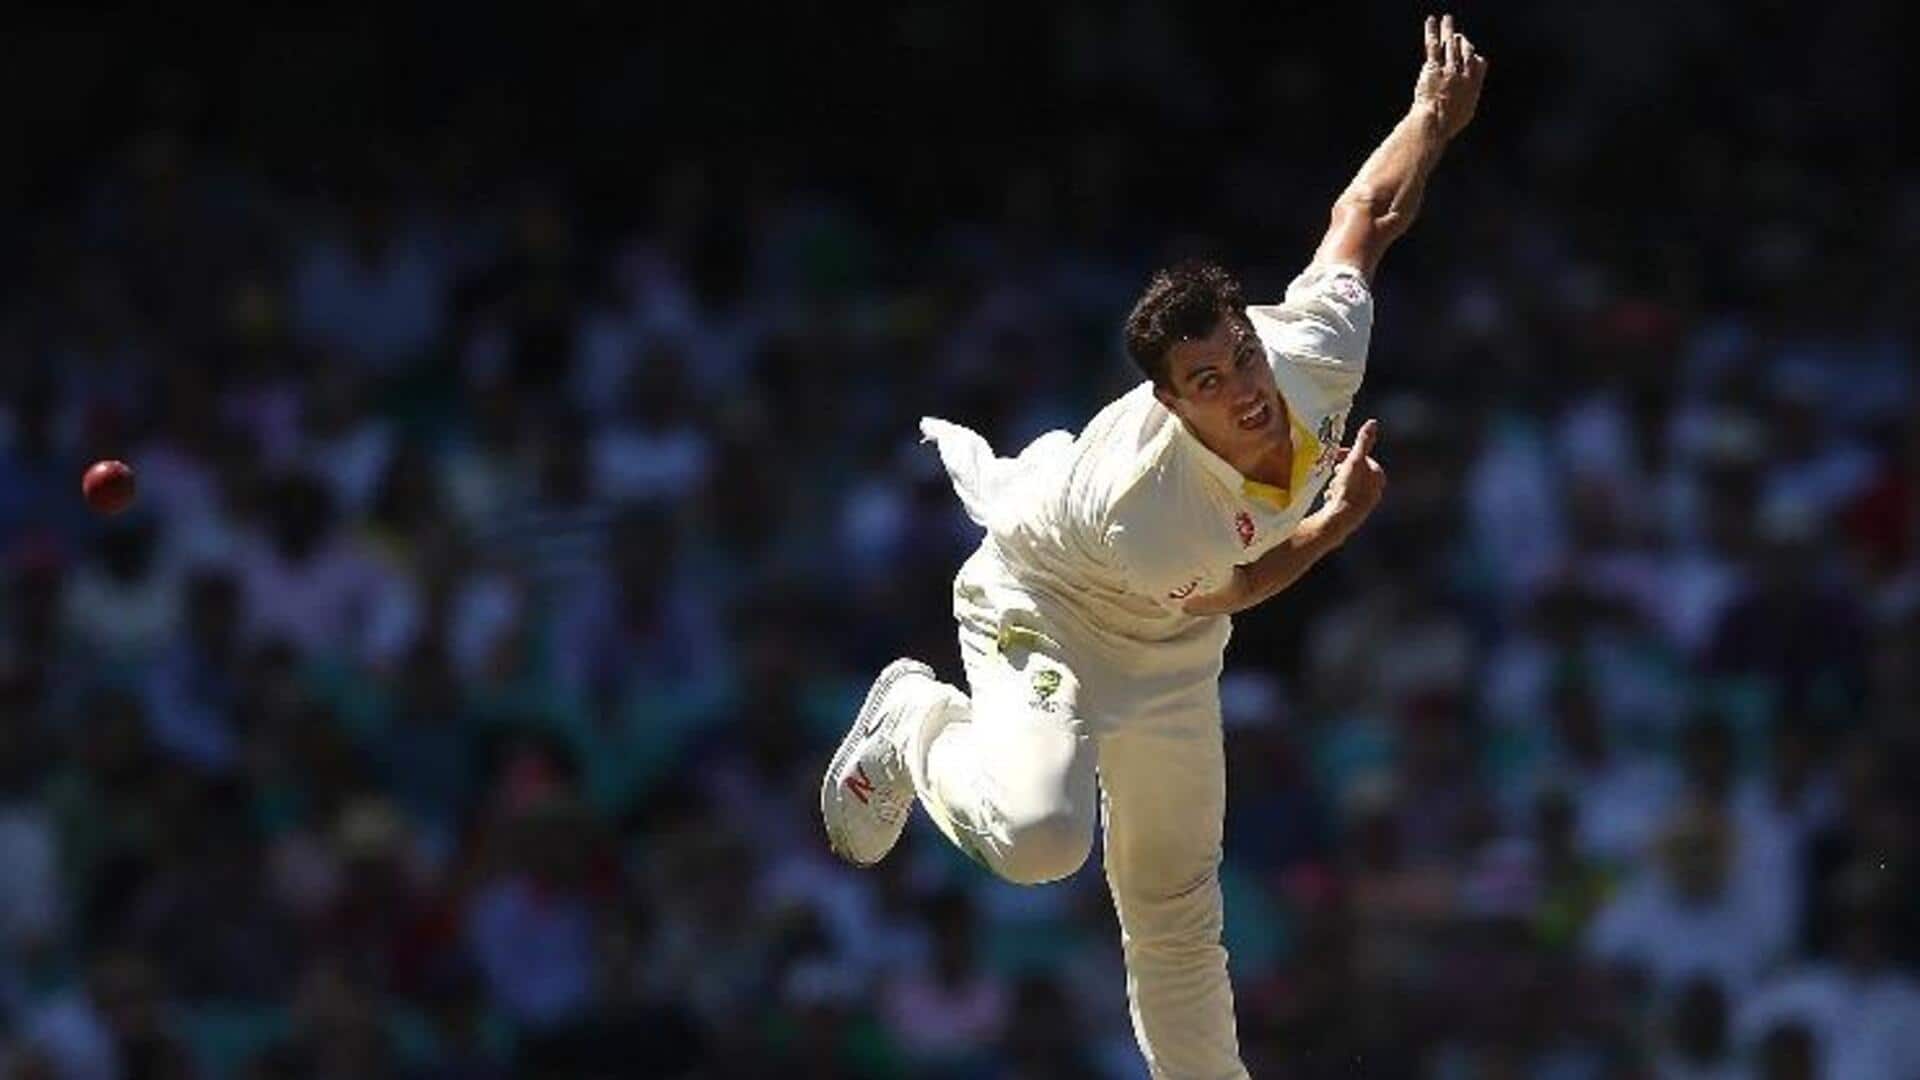 ऑस्ट्रेलिया बनाम पाकिस्तान: पैट कमिंस ने लगातार तीसरी पारी में चटकाए 5 विकेट, जानिए आंकड़े